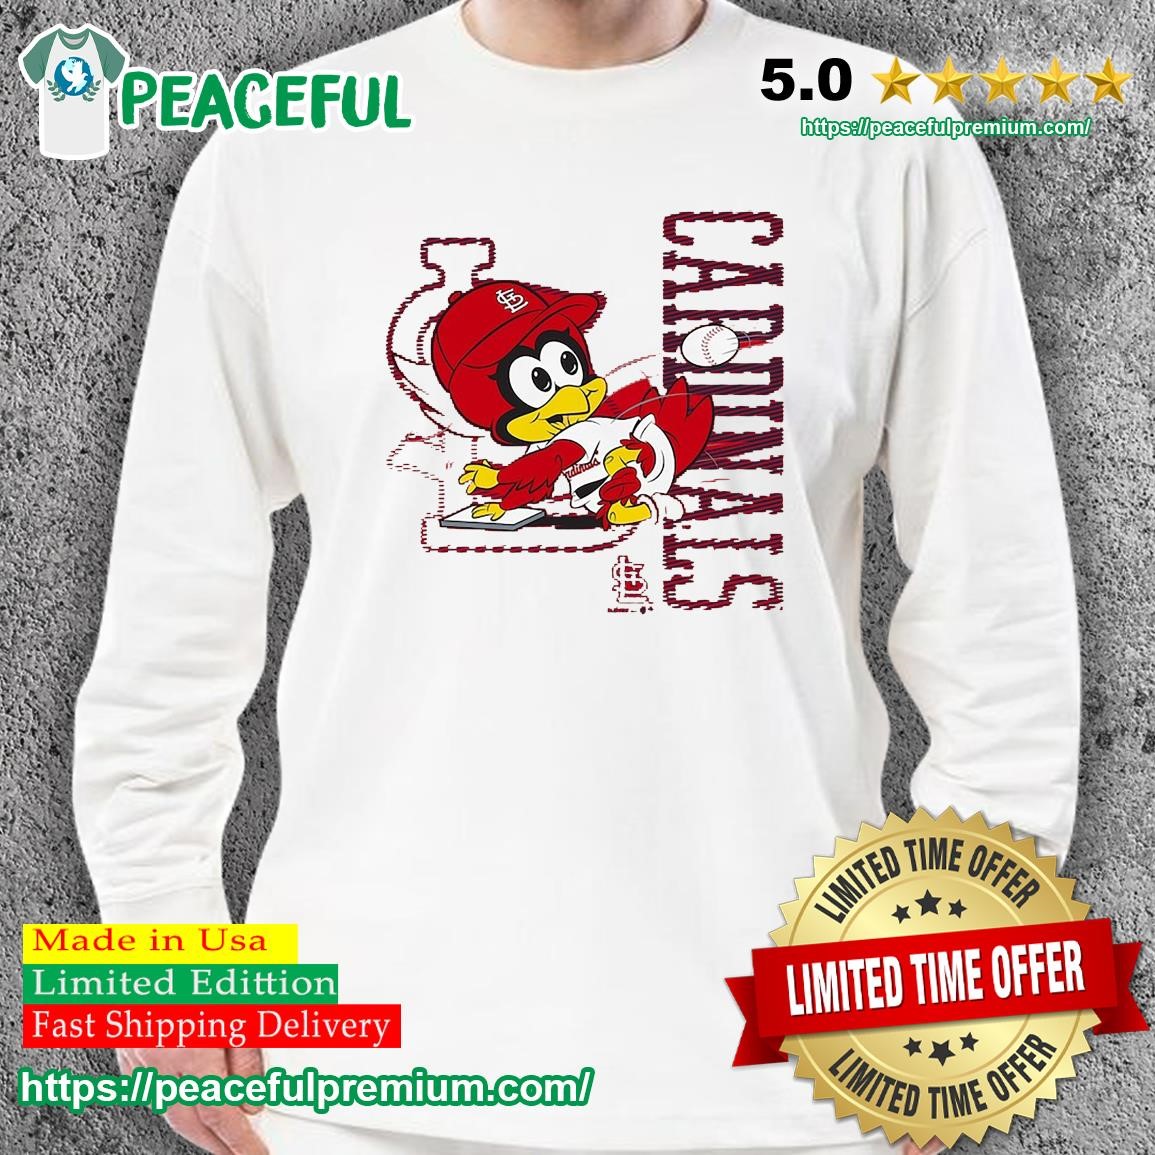 St. Louis Cardinals Mascot Fredbird Shirt, hoodie, sweater, long sleeve and  tank top